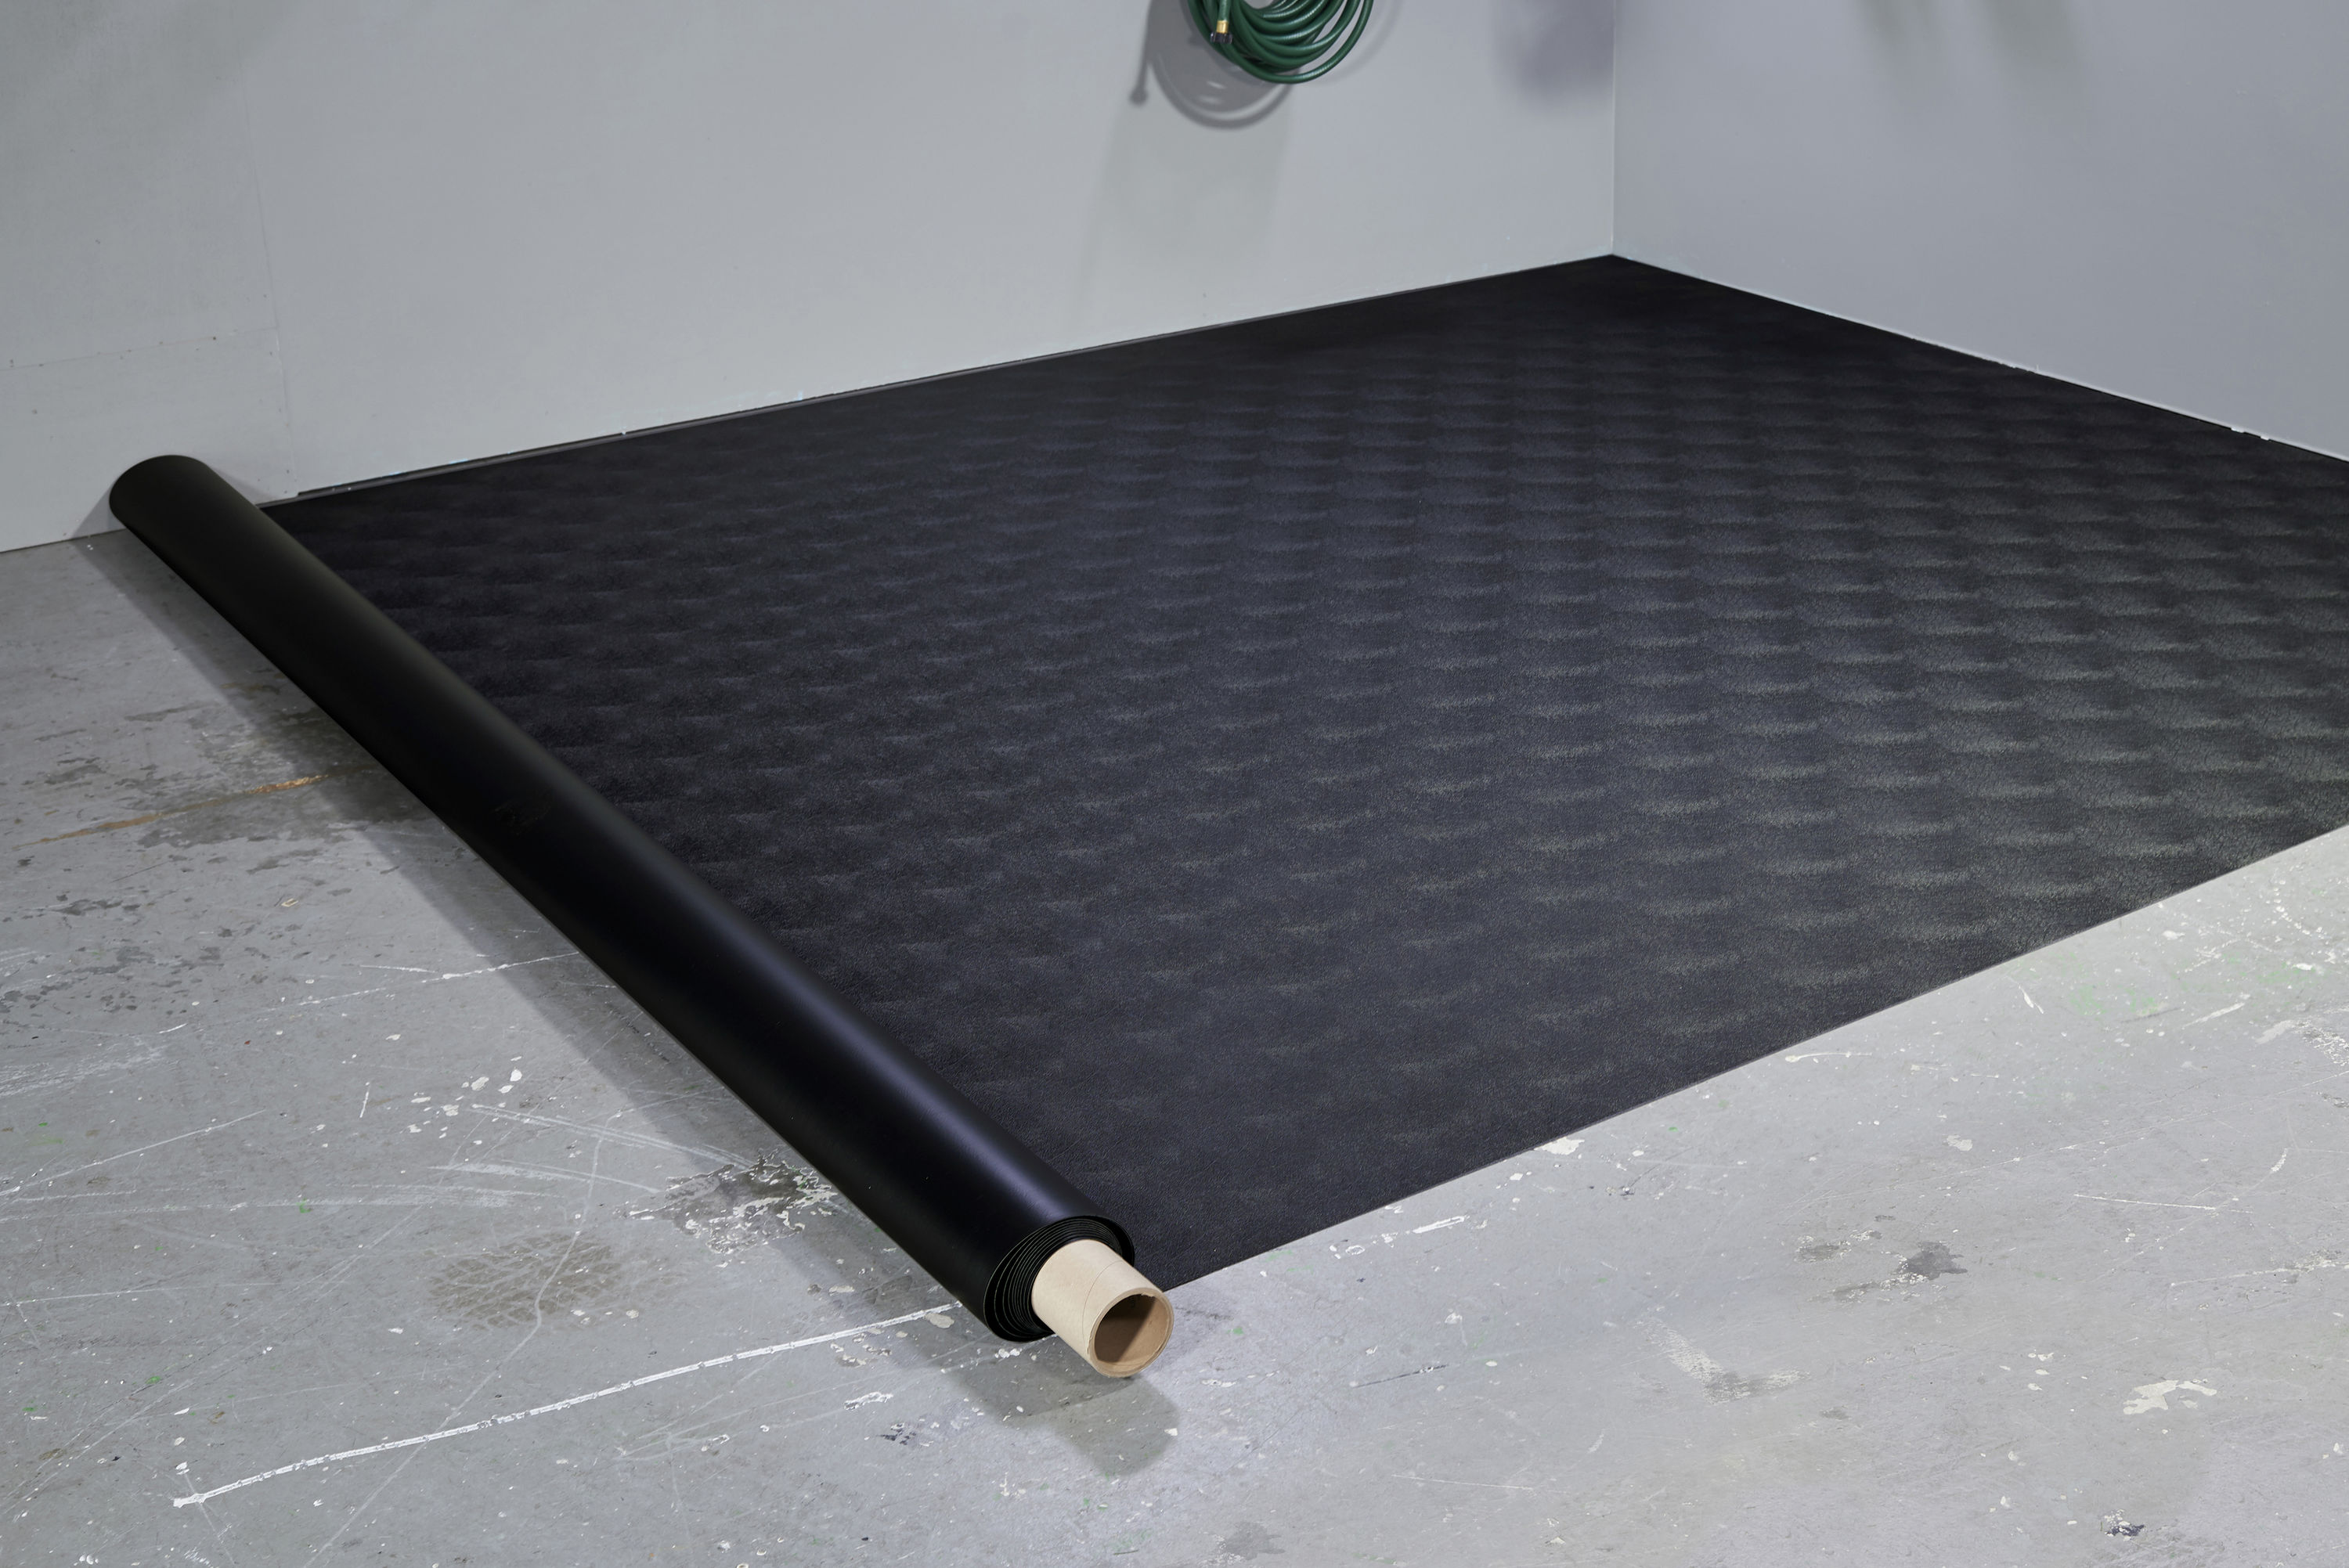 Garage Floor Mat - Coin, 7 1/2 x 17', Black - ULINE - H-3154BL